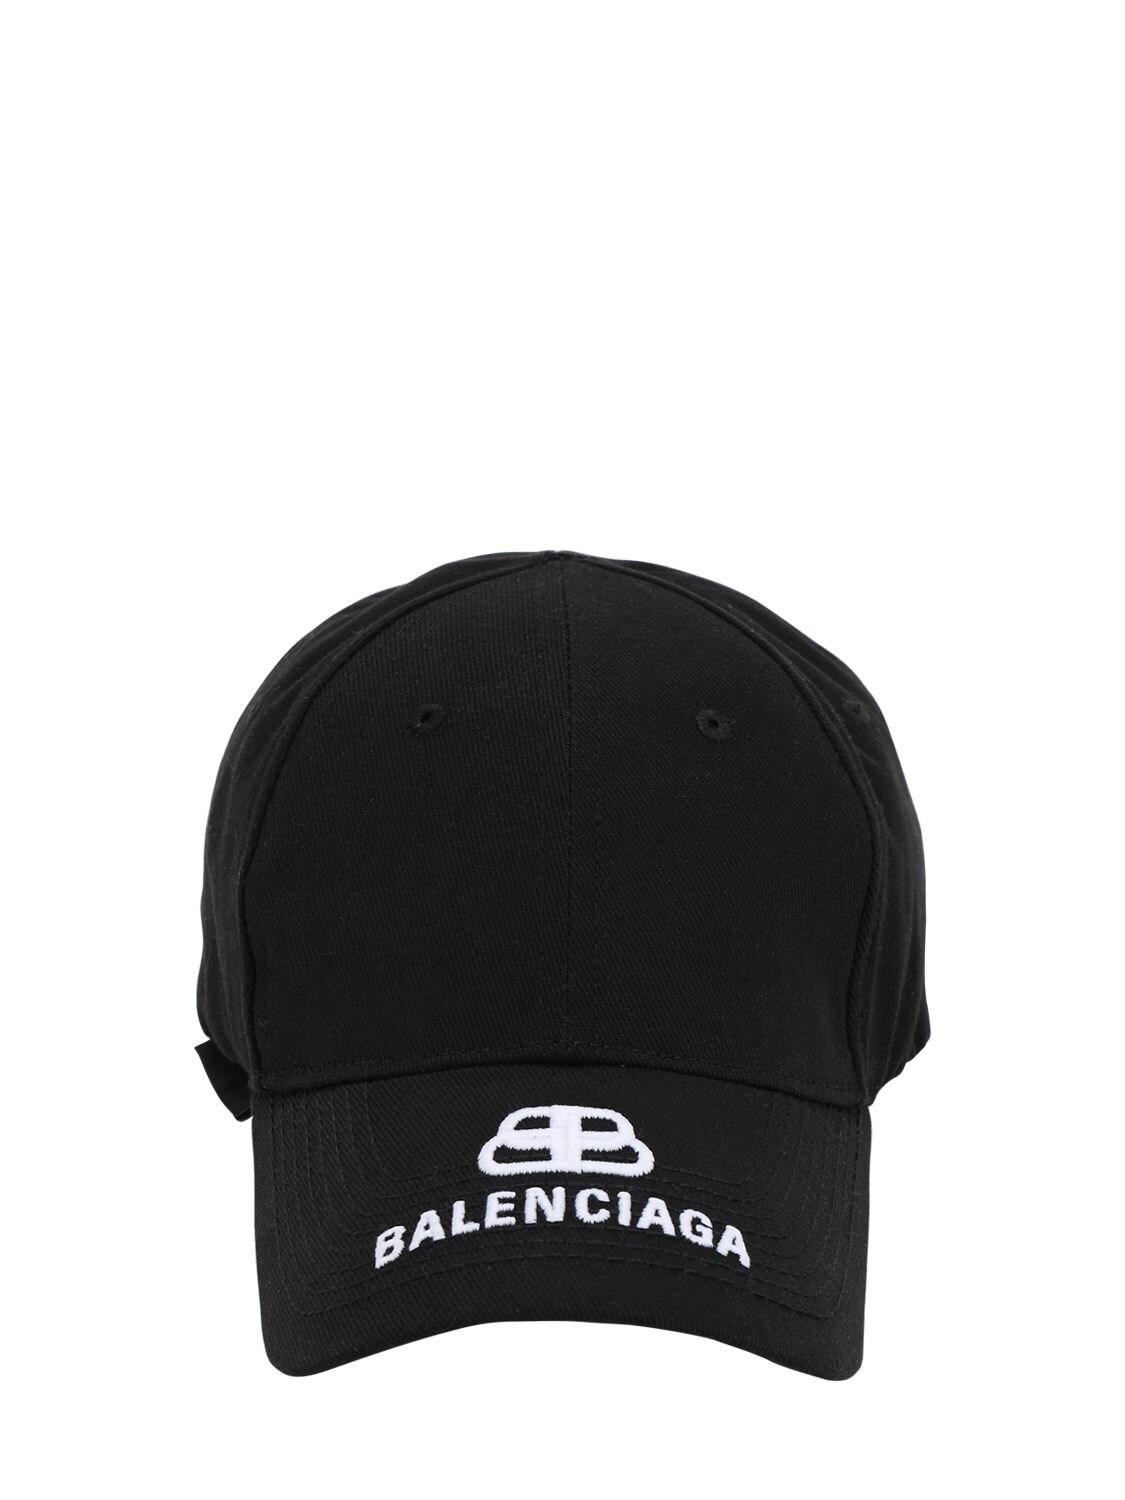 BALENCIAGA NEW BB CAP MEN BASEBALL HAT,70I18H001-MTA3NW2